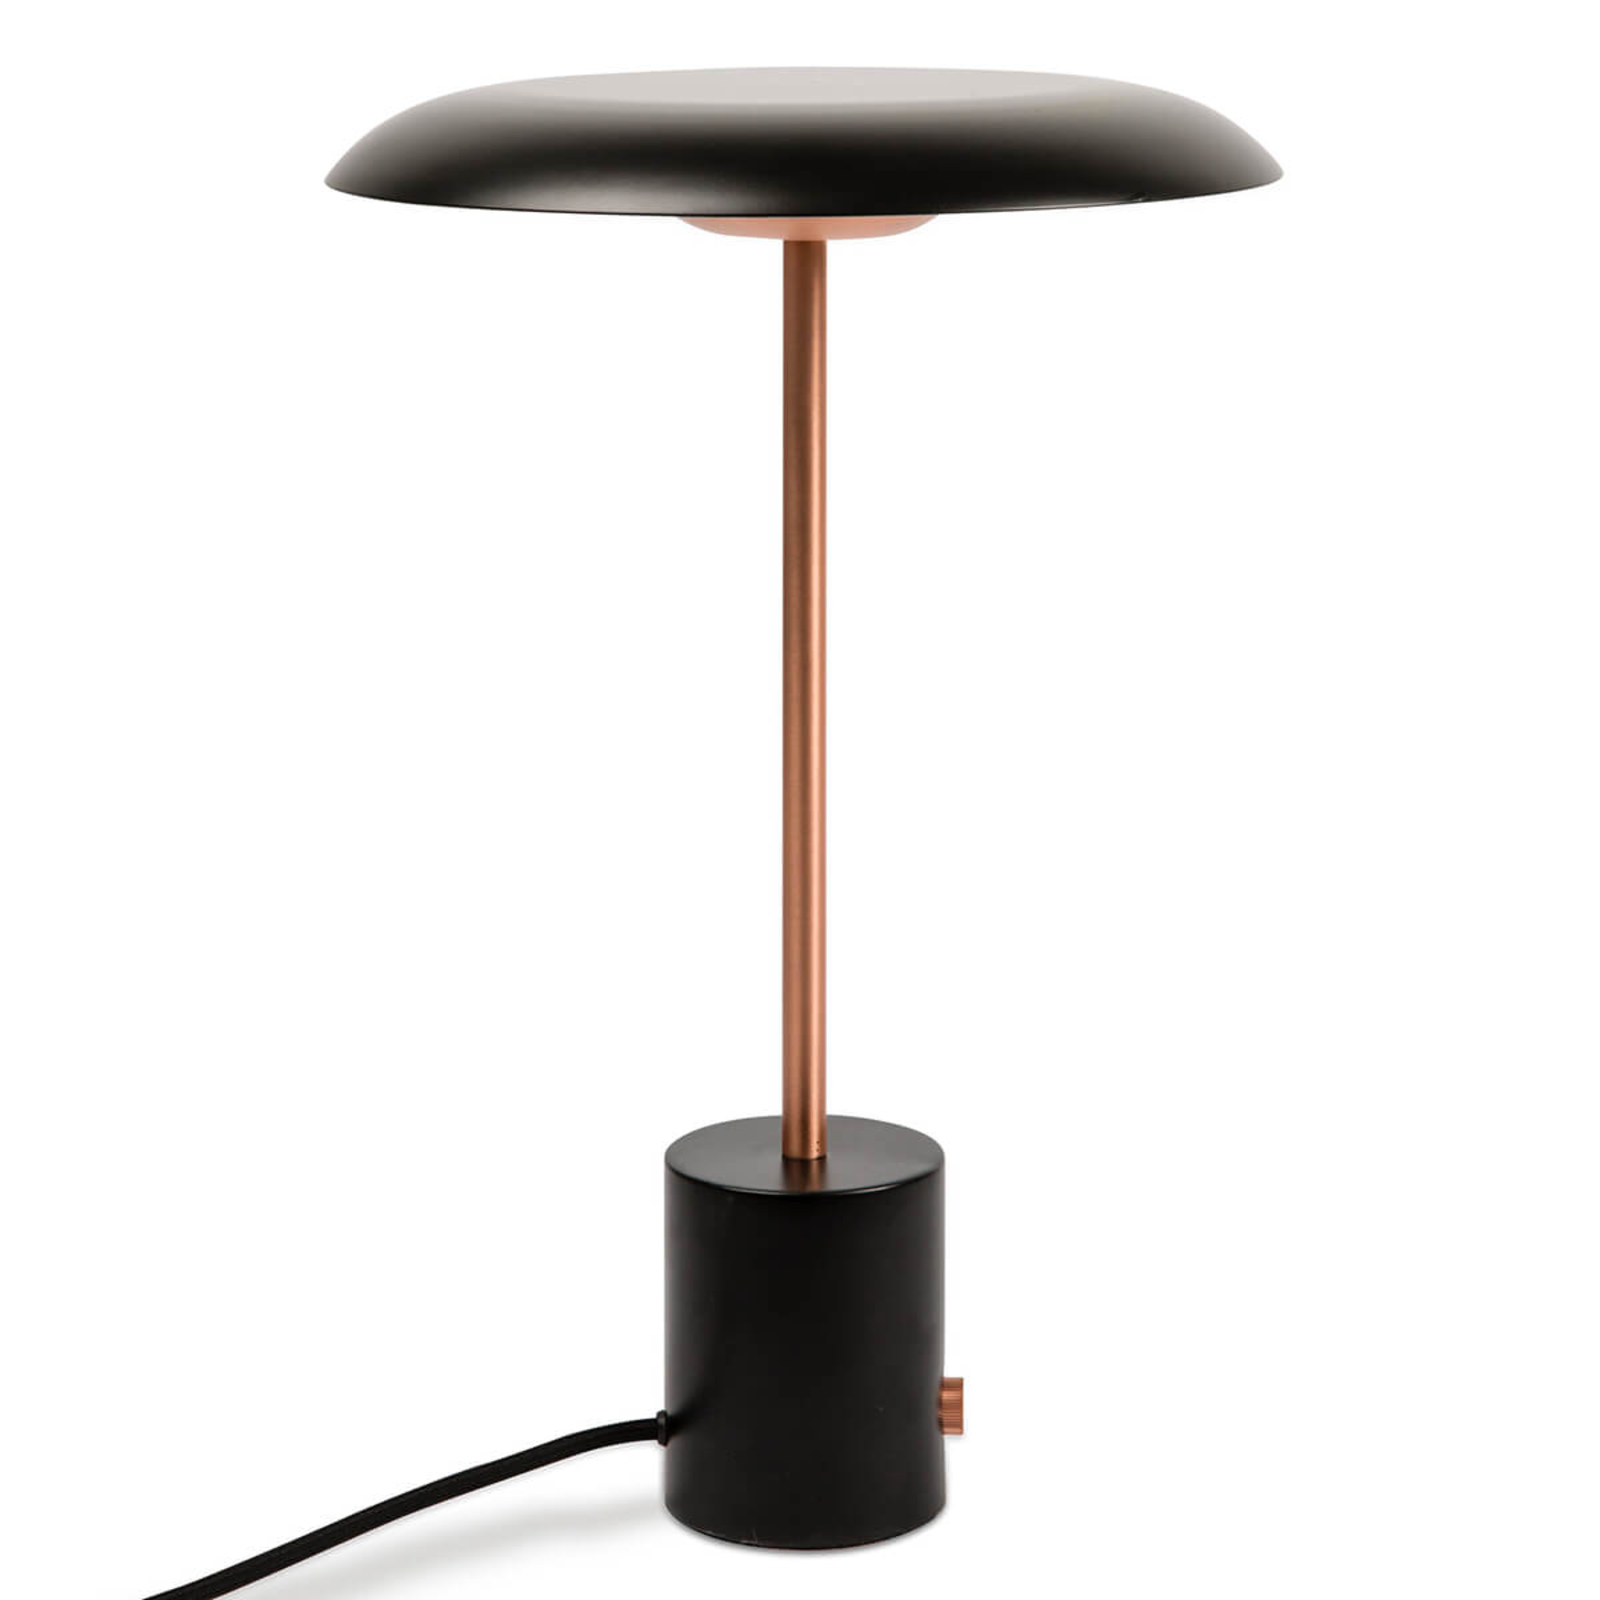 LED stolní lampa Hoshi se stmívačem, černá-měď